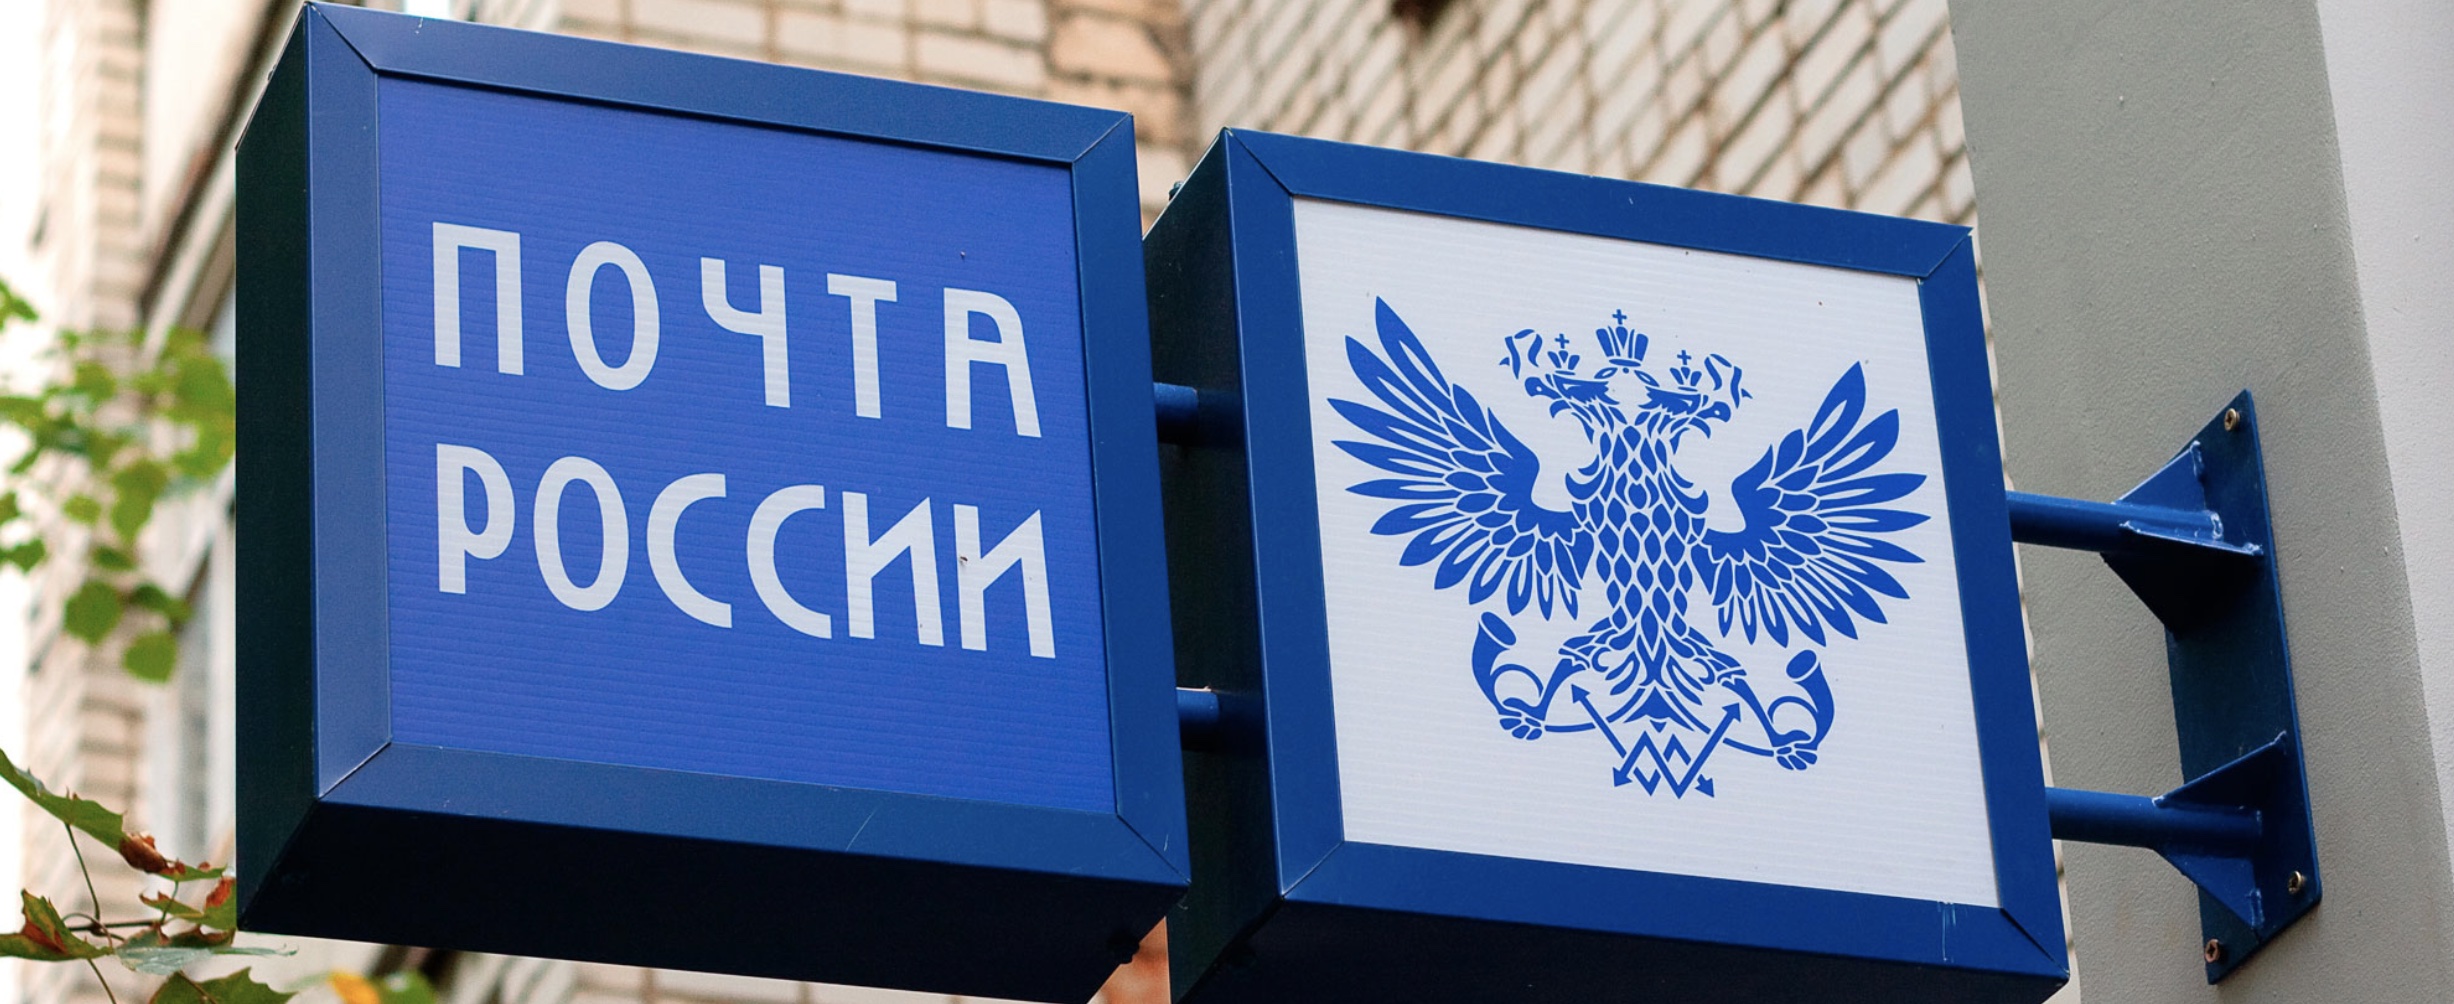 В отделениях «Почты России» ради спасения от убыточности откроют пункты платной медицины